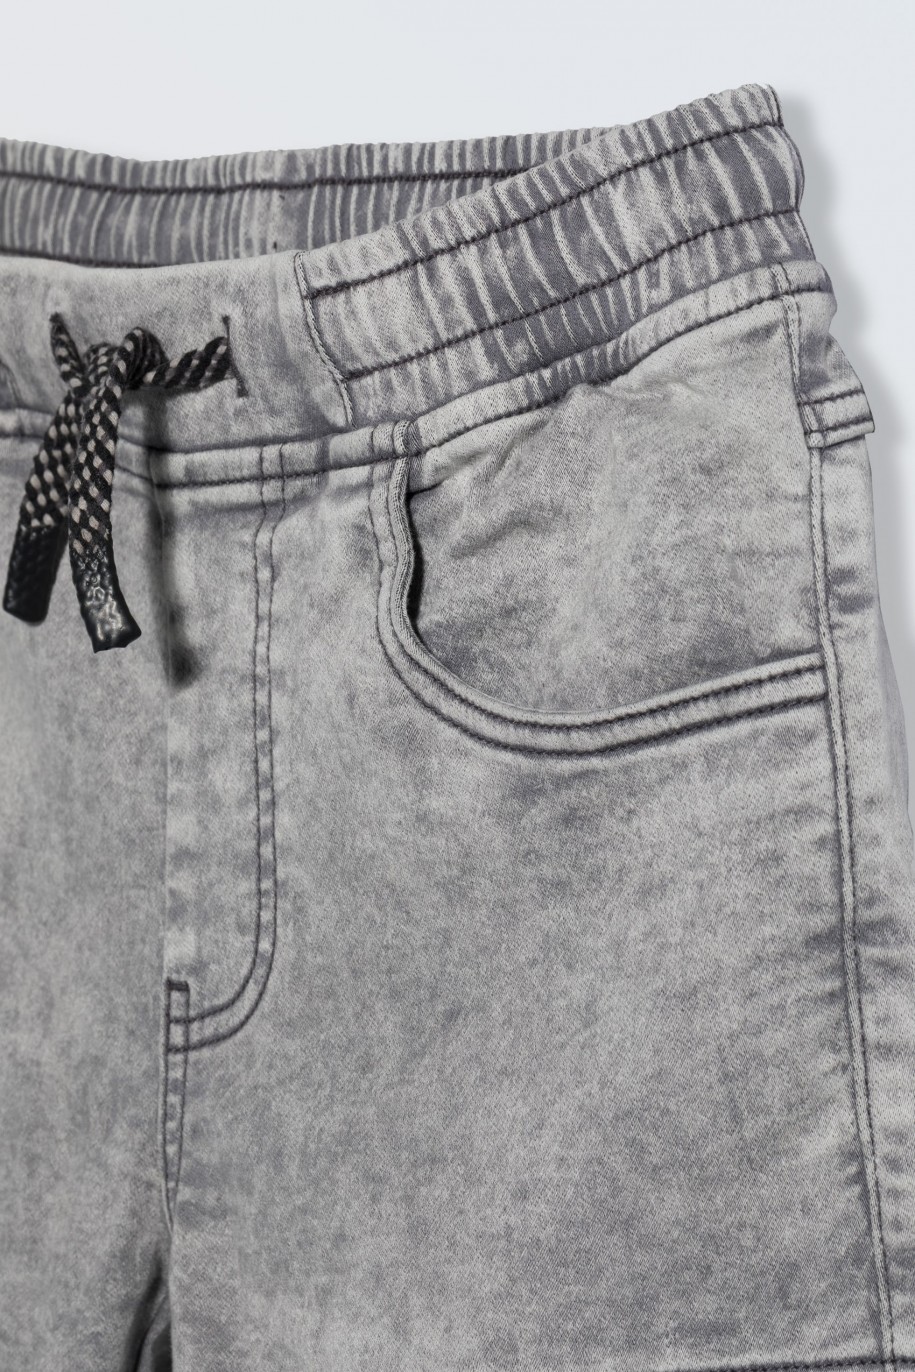 Szare krótkie spodenki jeansowe z przestrzennymi kieszeniami - 46784